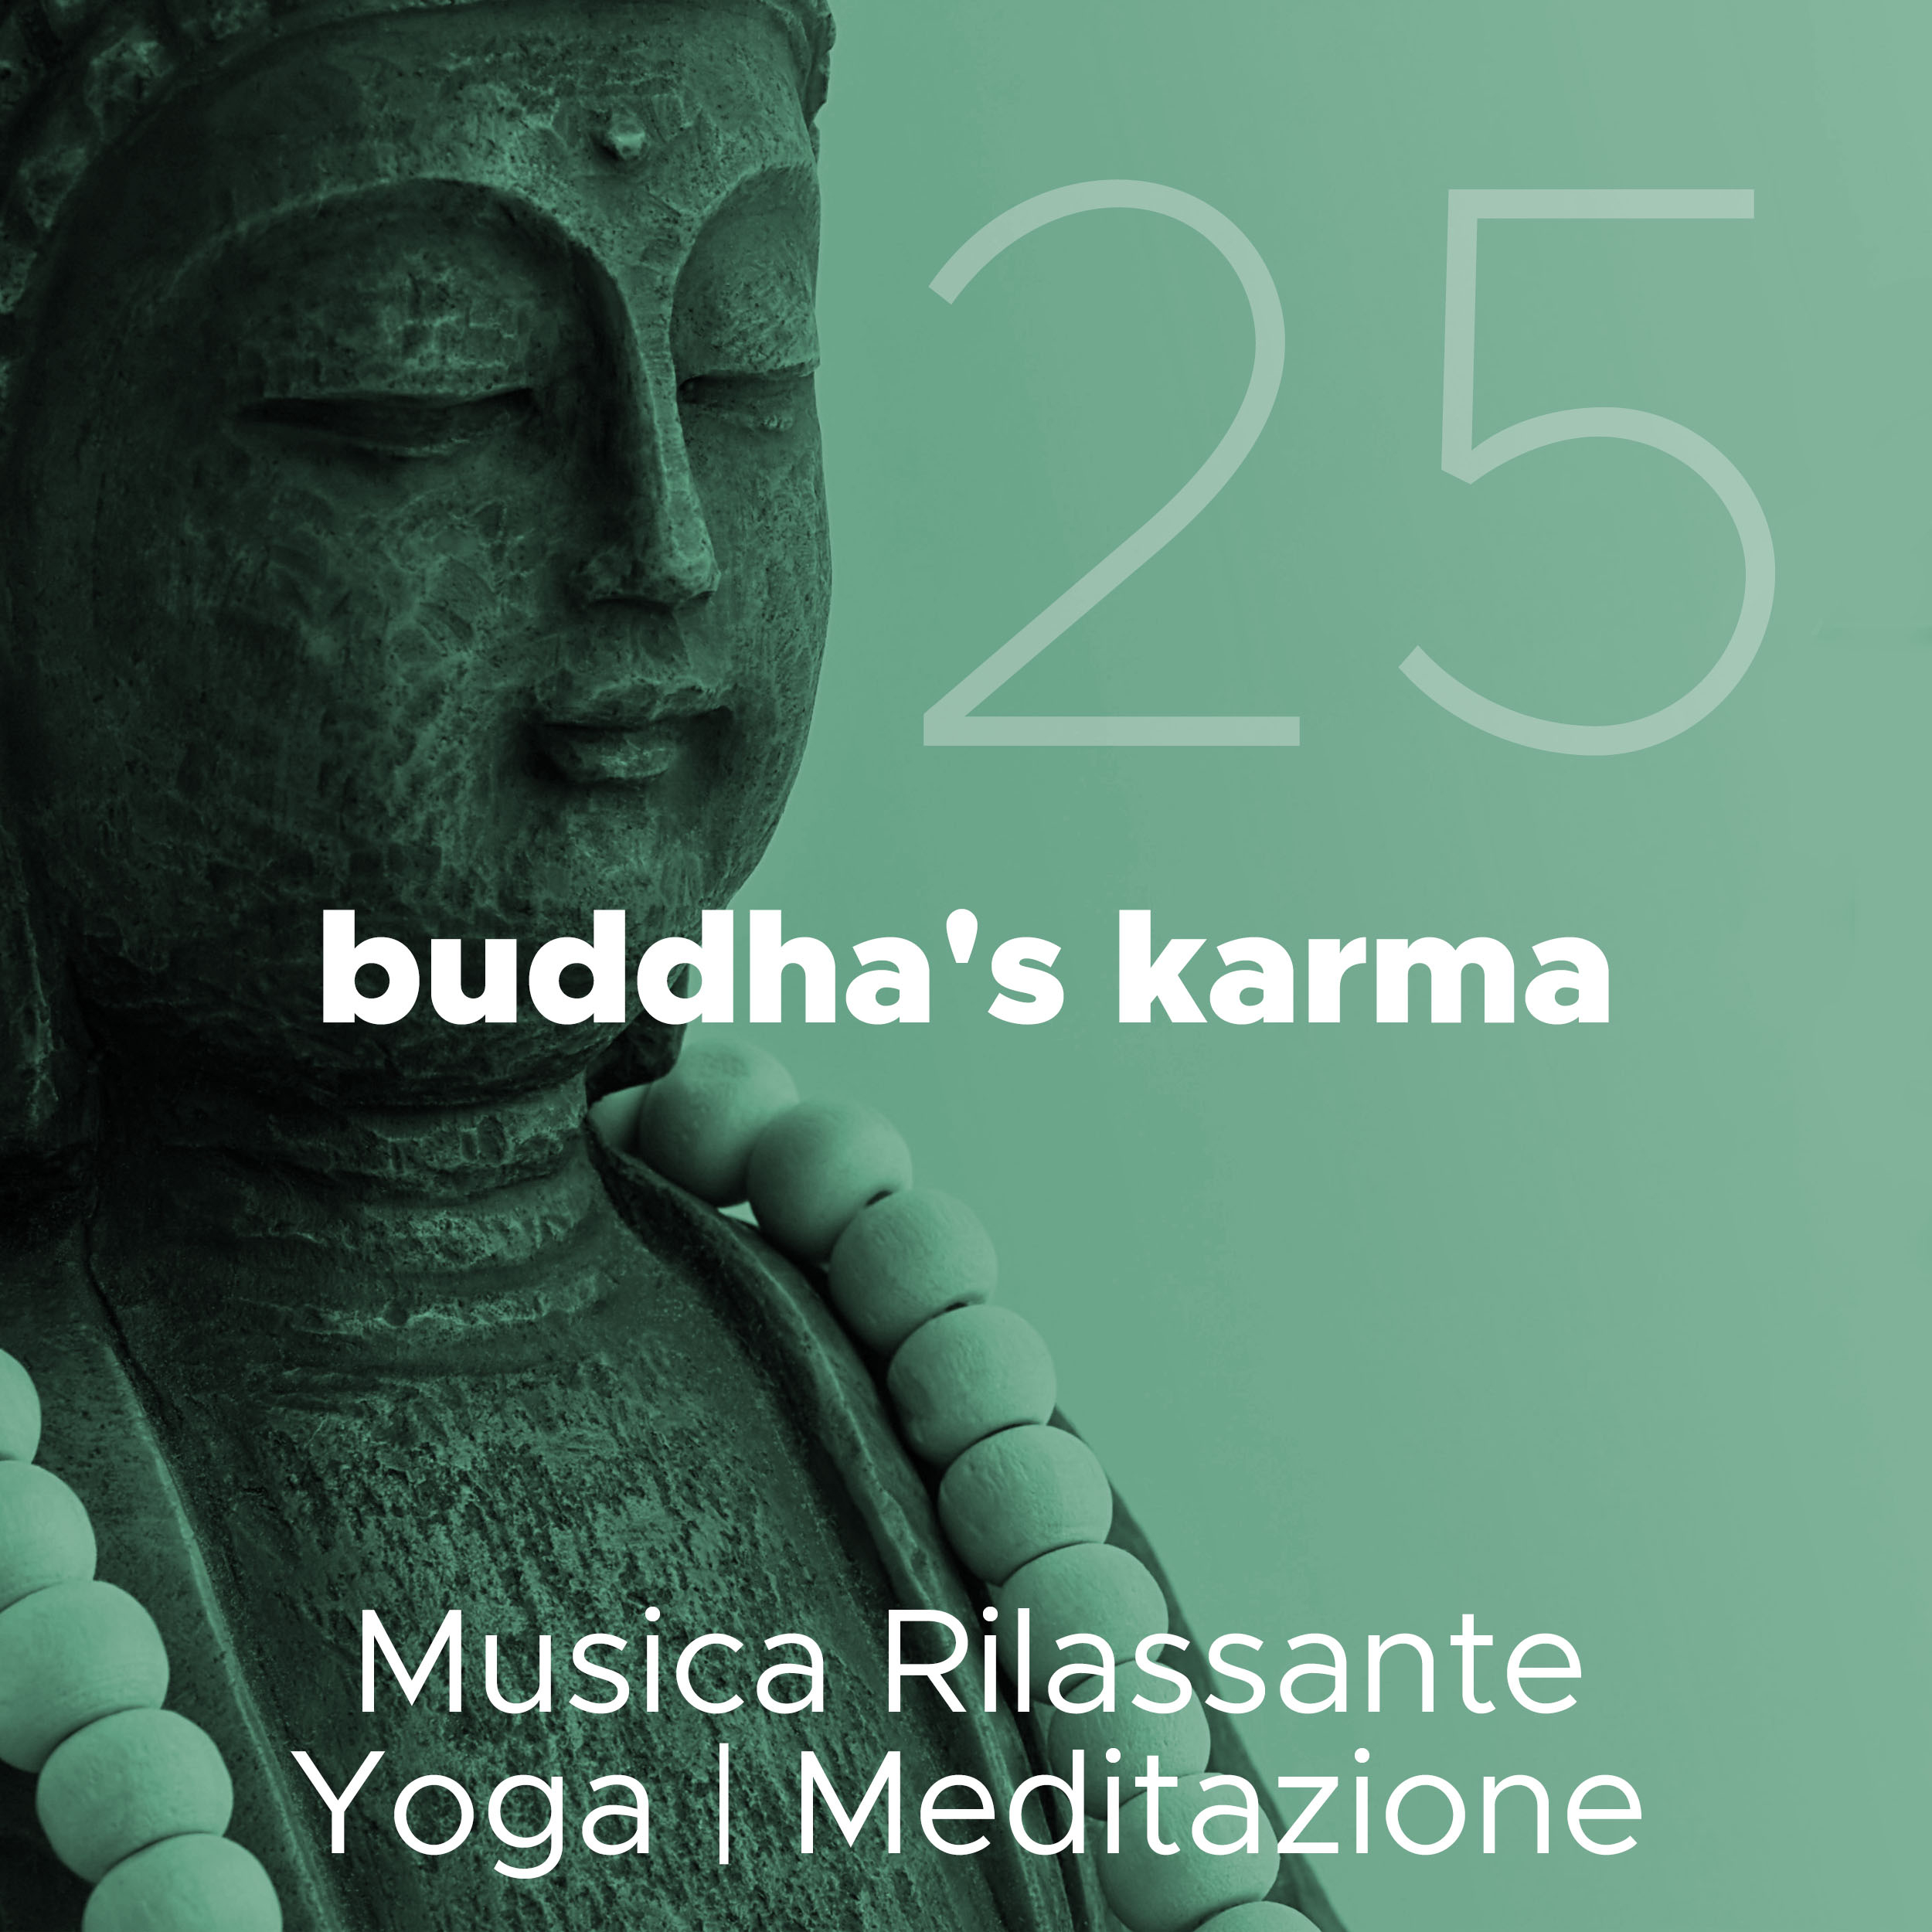 Buddha's Karma 25 - Musica Rilassante di Yoga e Meditazione con Suoni della Natura